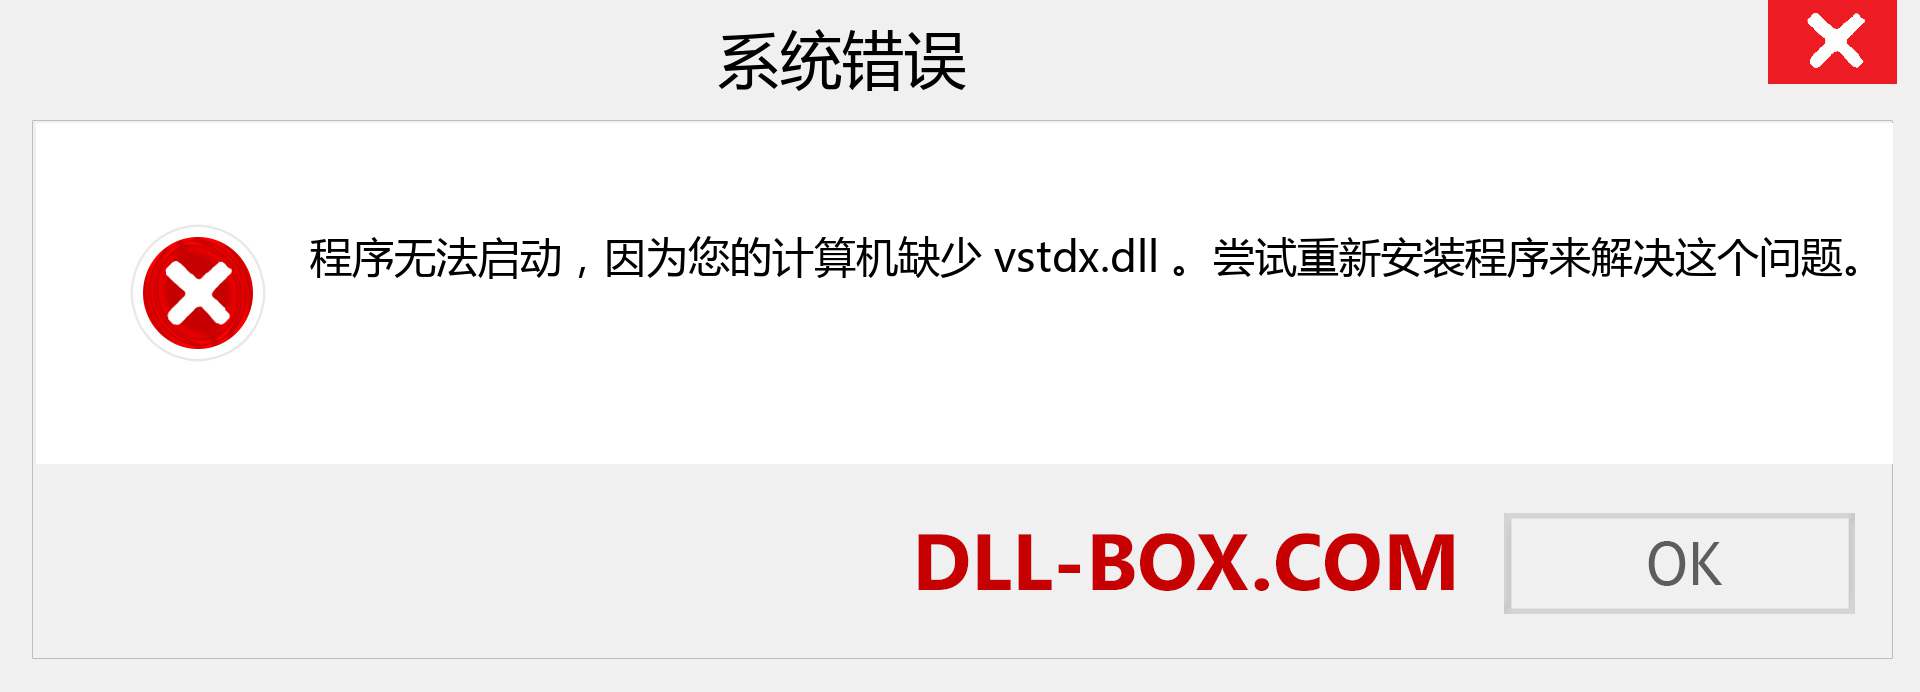 vstdx.dll 文件丢失？。 适用于 Windows 7、8、10 的下载 - 修复 Windows、照片、图像上的 vstdx dll 丢失错误